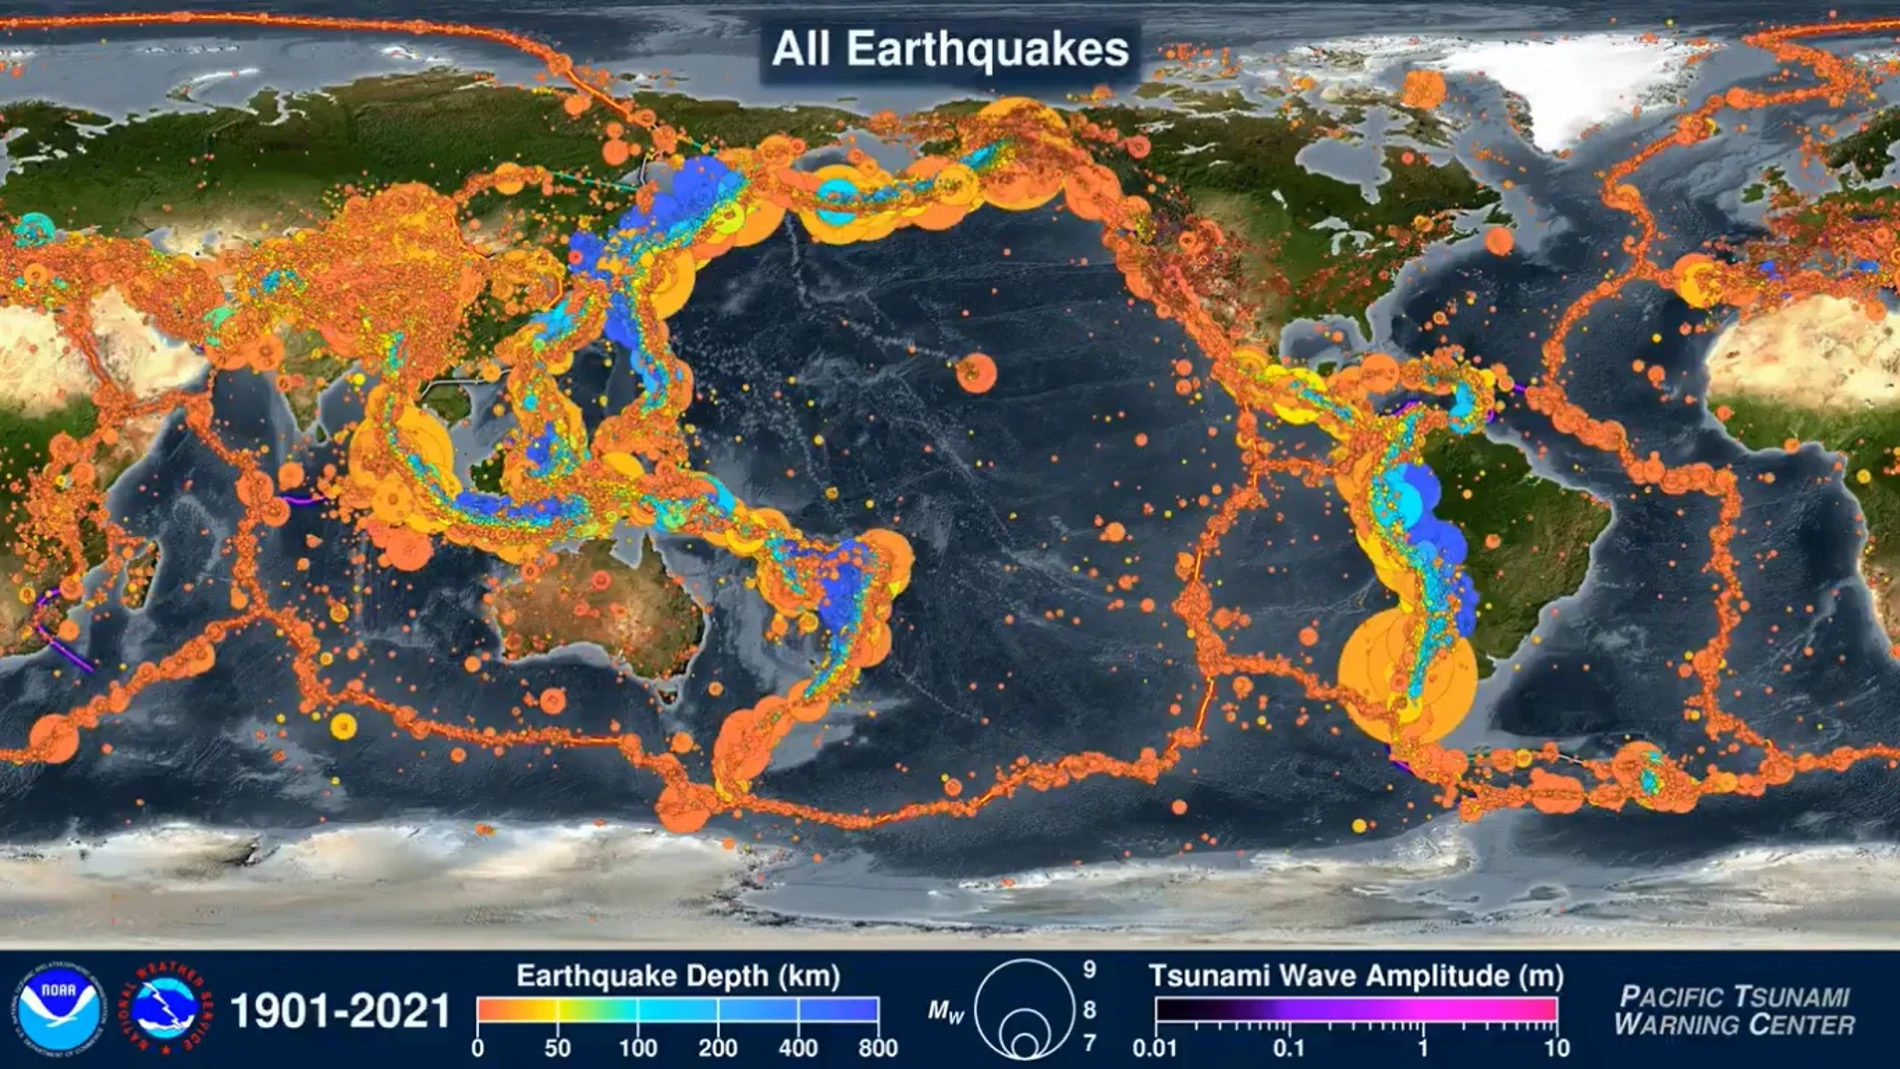 Vista general que muestra todos los terremotos registrados desde el año 1900 hasta nuestros días